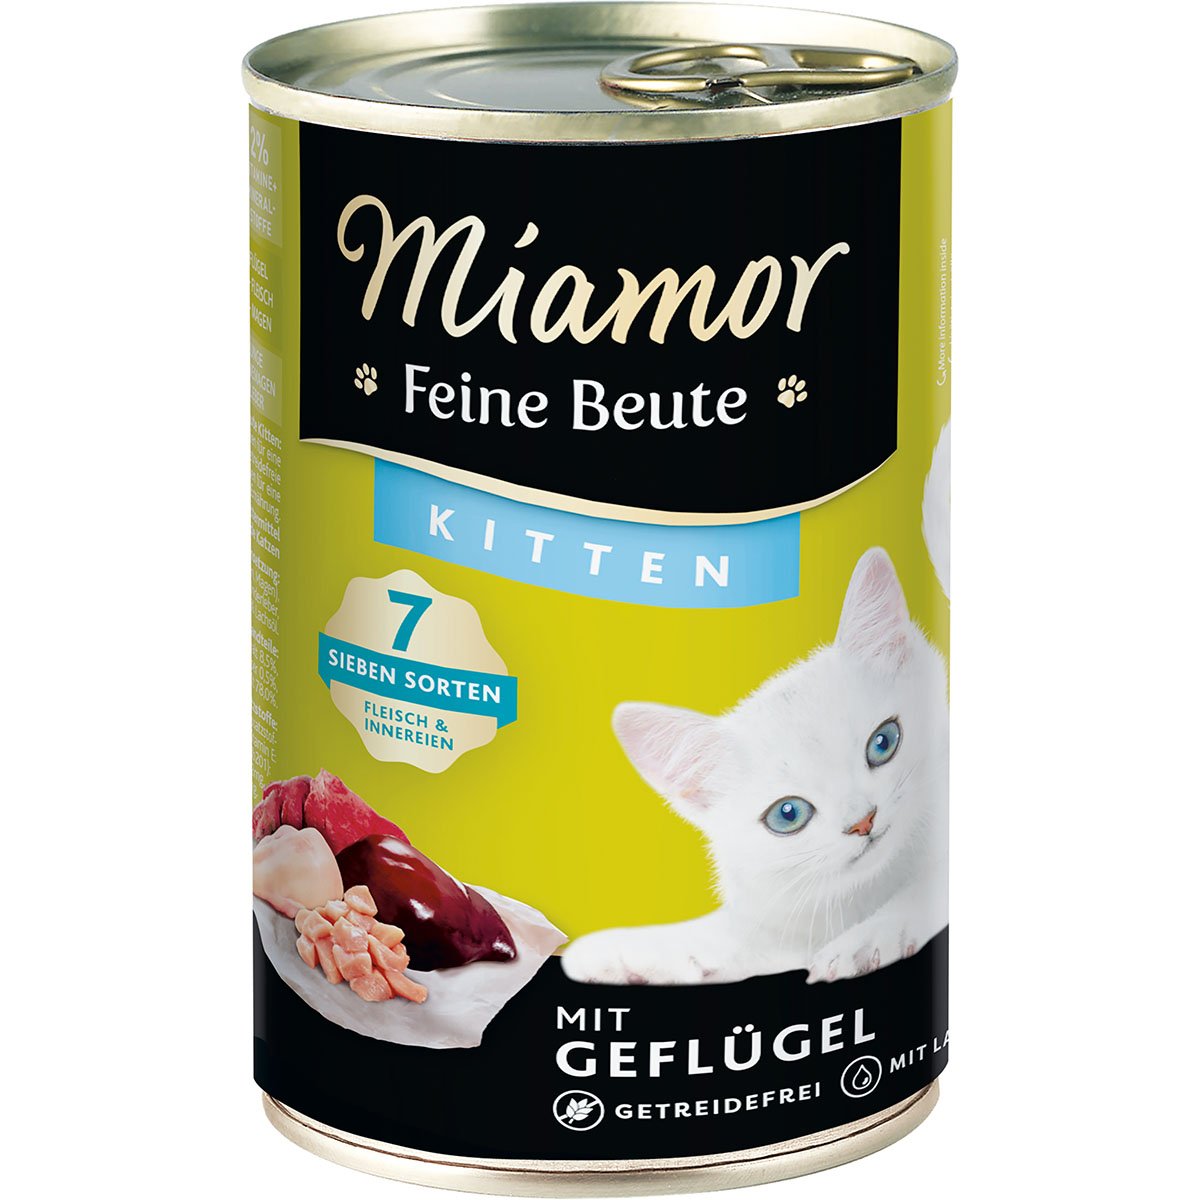 Miamor Feine Beute Kitten - Geflügel 12x400g von Miamor